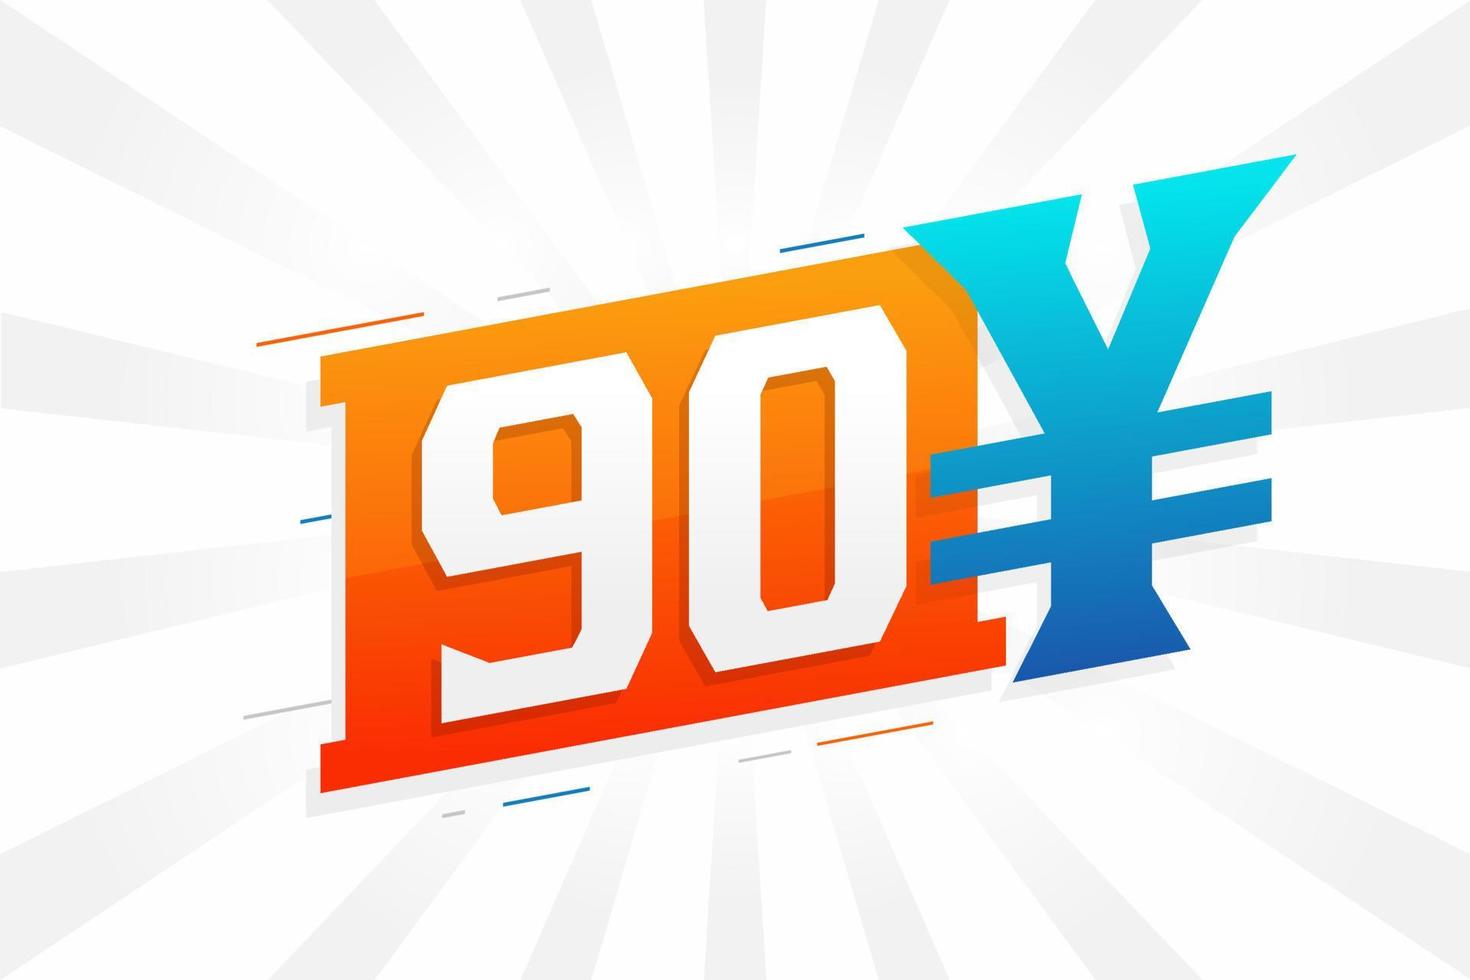 Símbolo de texto vectorial de moneda china de 90 yuanes. 90 yen moneda japonesa dinero stock vector